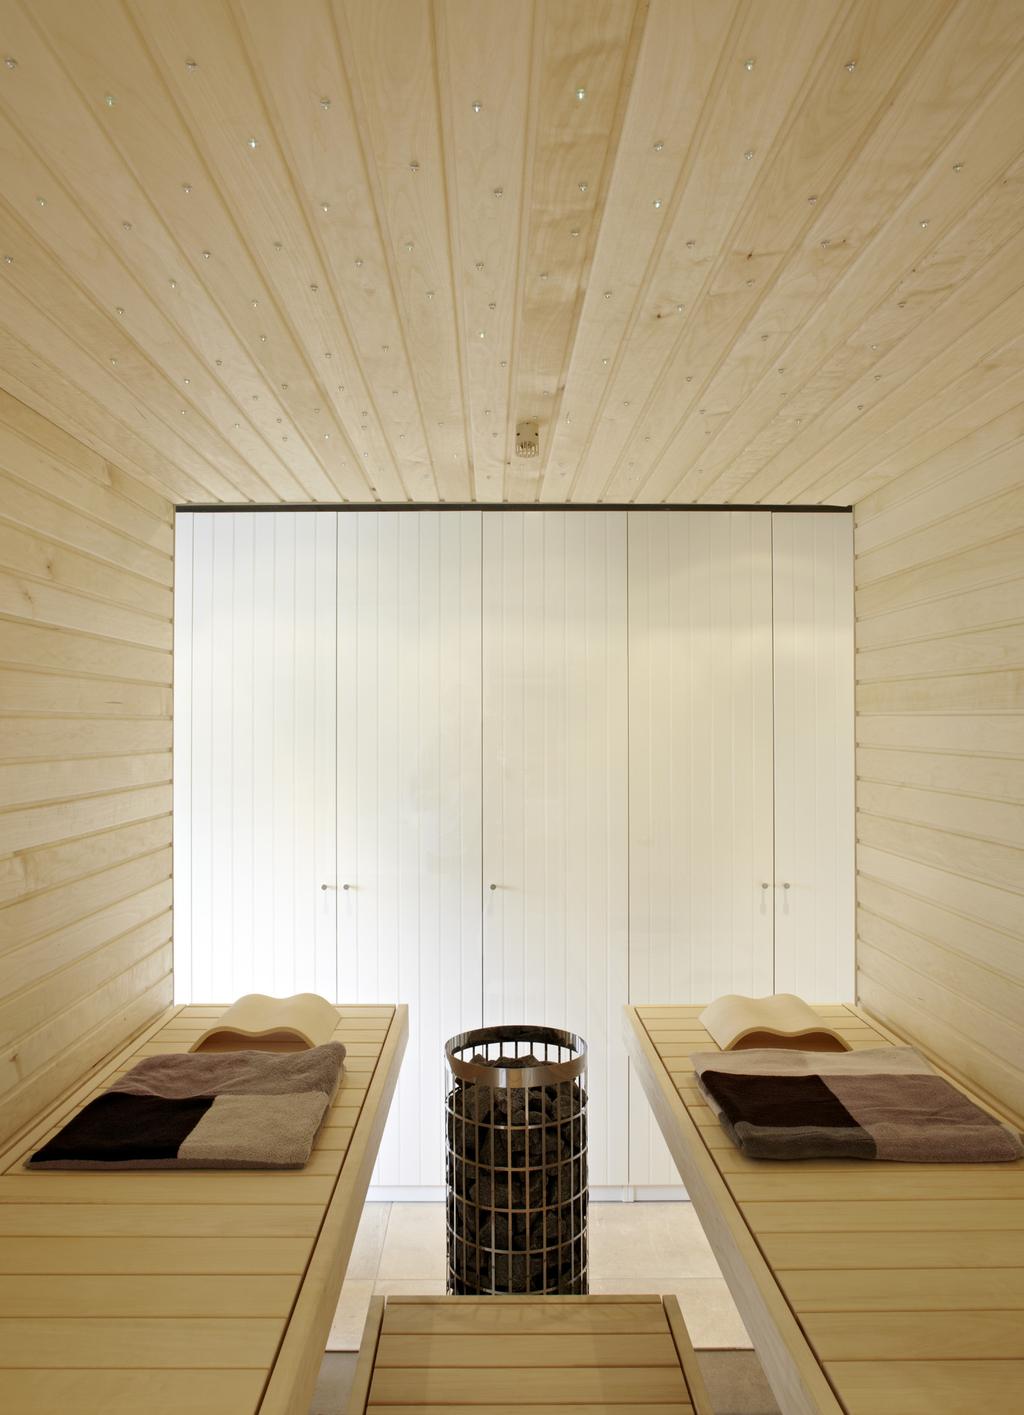 03 03 Der private Saunabereich bietet mit stützenfreien Liegeflächen viel Platz zur Erholung.